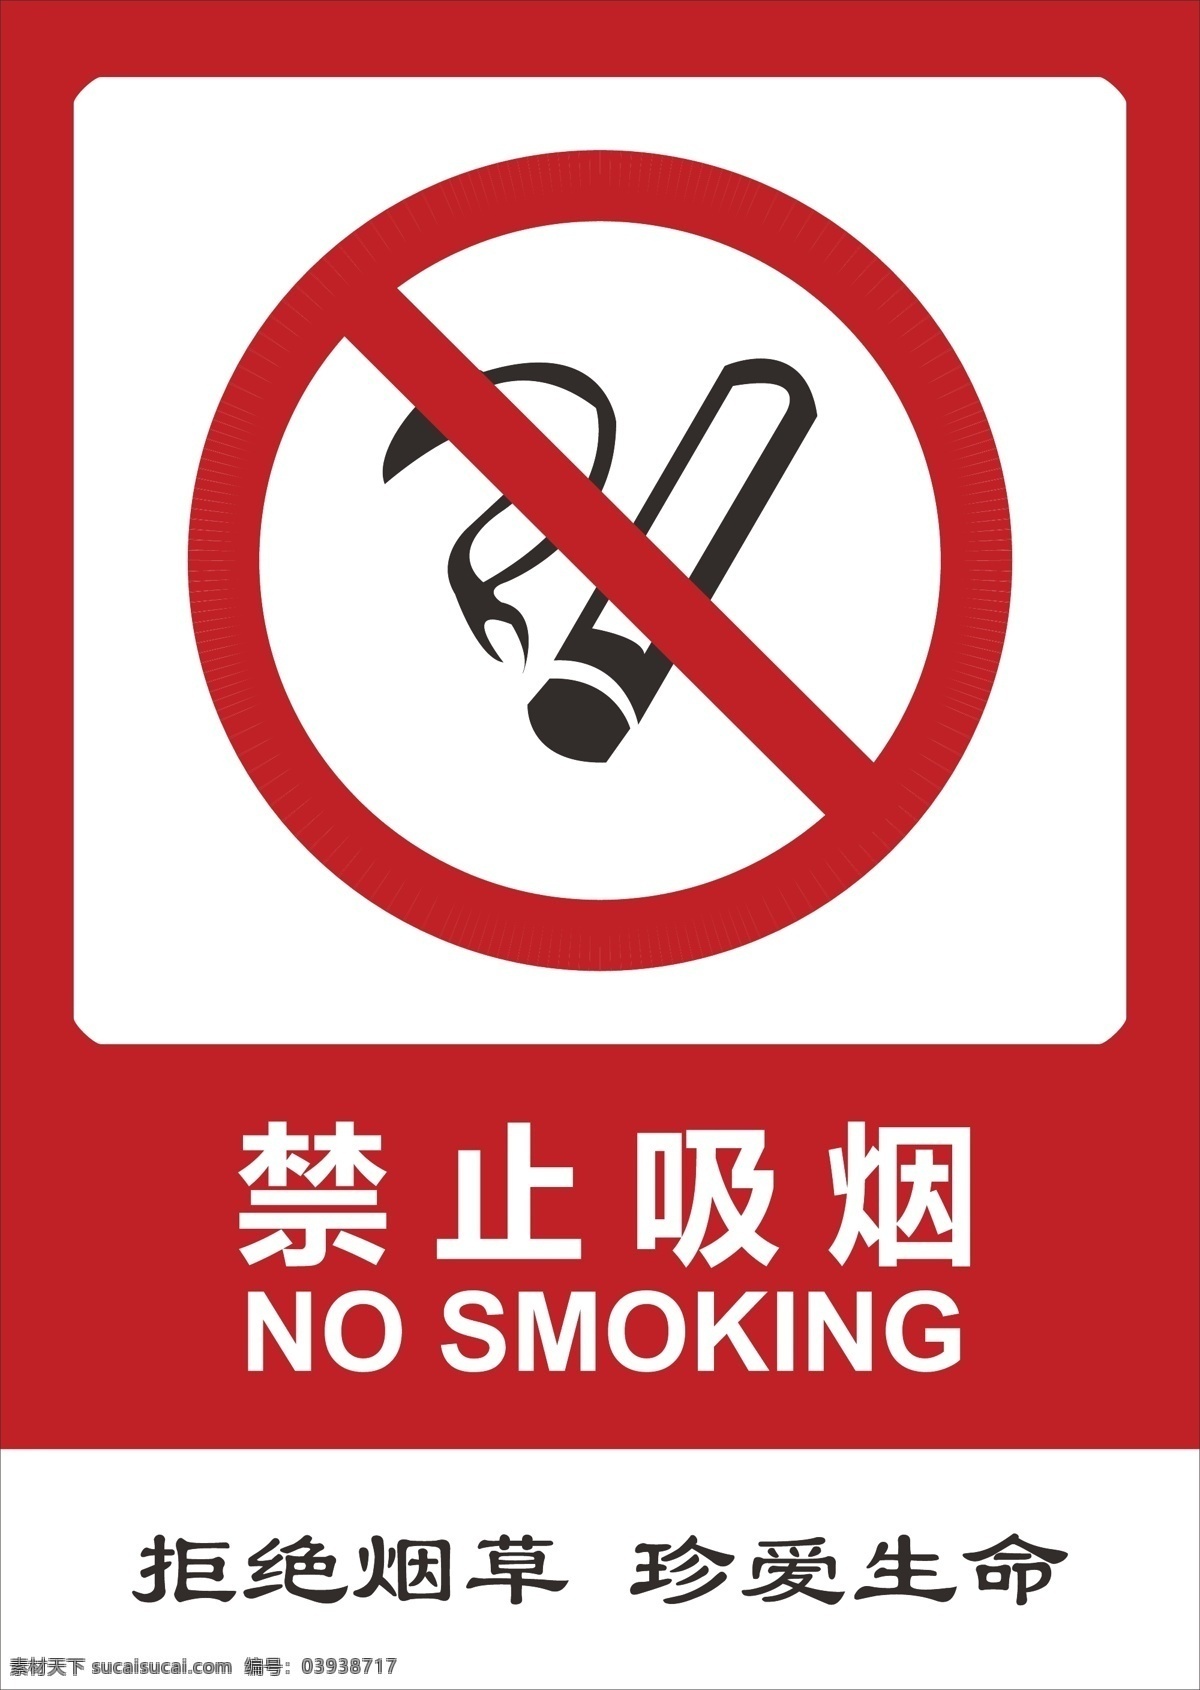 禁止吸烟海报 海报模板 no smoking 请勿吸烟 禁止抽烟 禁止吸烟标志 拒绝烟草 珍爱生命 海报宣传